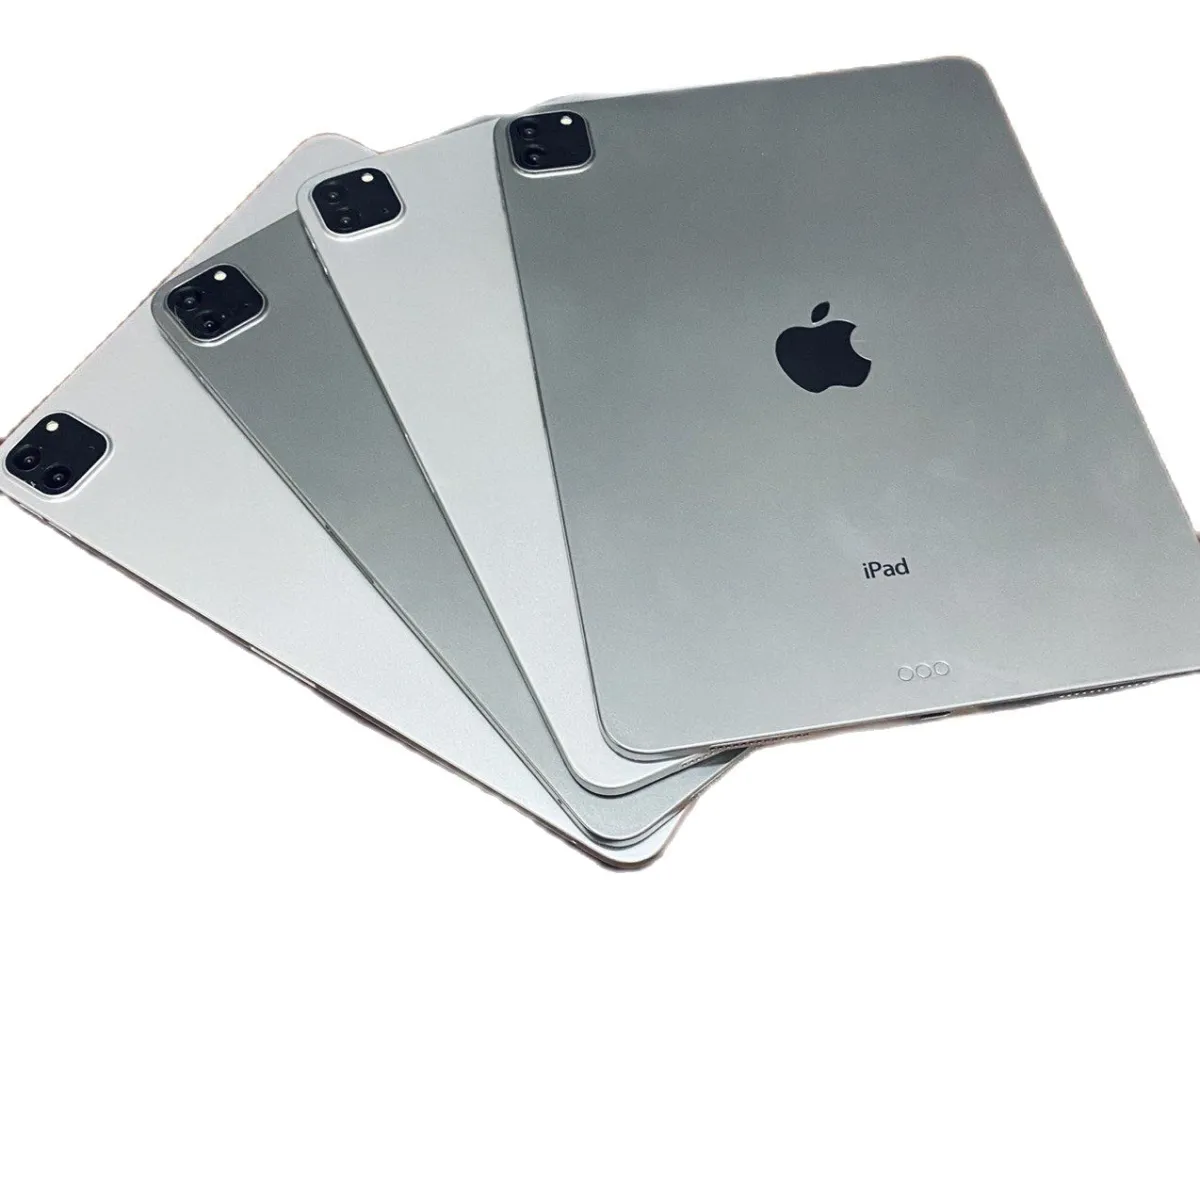 Lộ diện thiết kế của bộ đôi iPad mini 6 và iPad Pro 2021  Fptshopcomvn